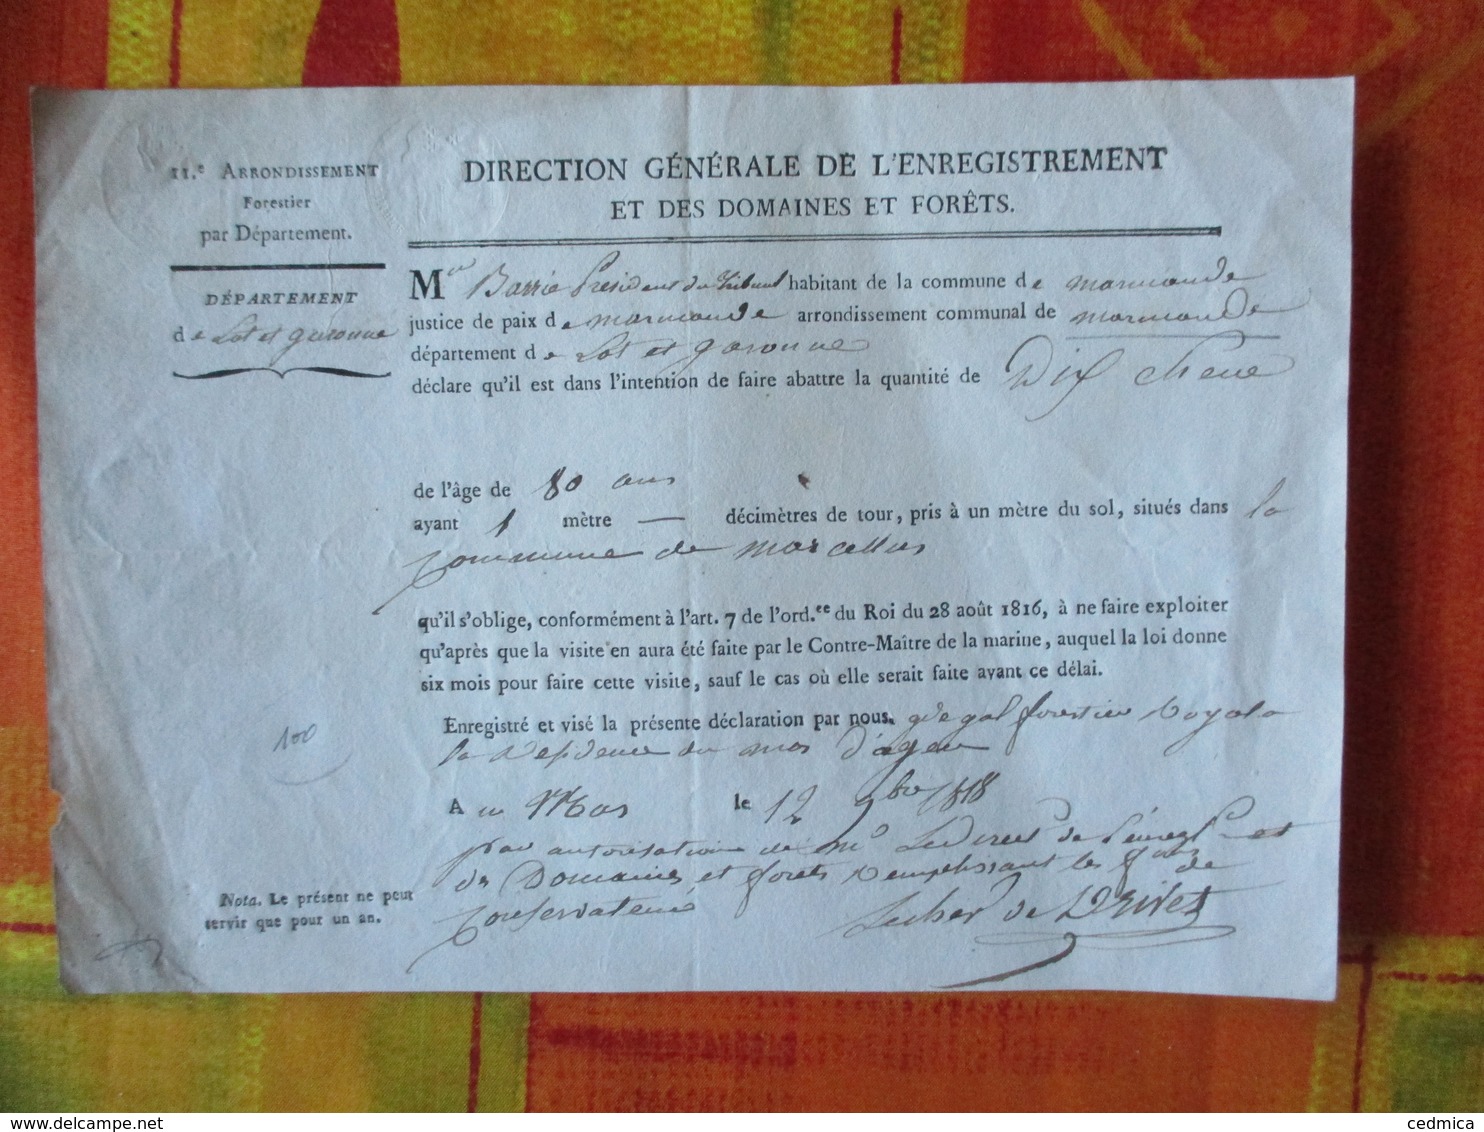 AGEN LE 12 9bre 1818 LE GARDE GENERAL FORESTIER ROYAL DECLARATION DE FAIRE ABATTRE DIX CHENE DE 80 Ans 1 METRE DE DIAMET - Historical Documents